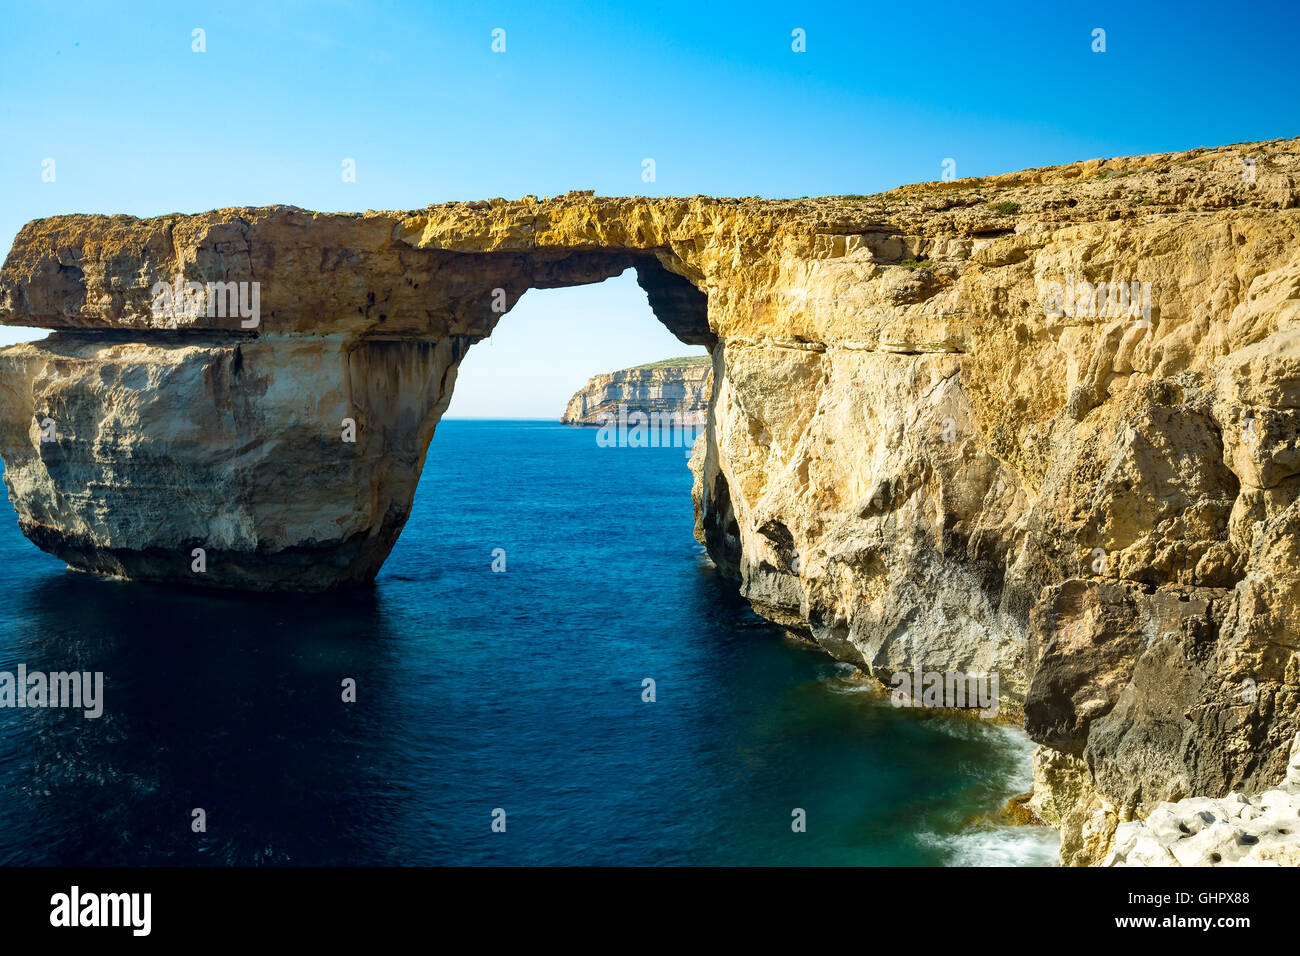 Ventana azul, arco natural, famosos y populares lugares turísticos en la isla de Gozo, Malta Foto de stock